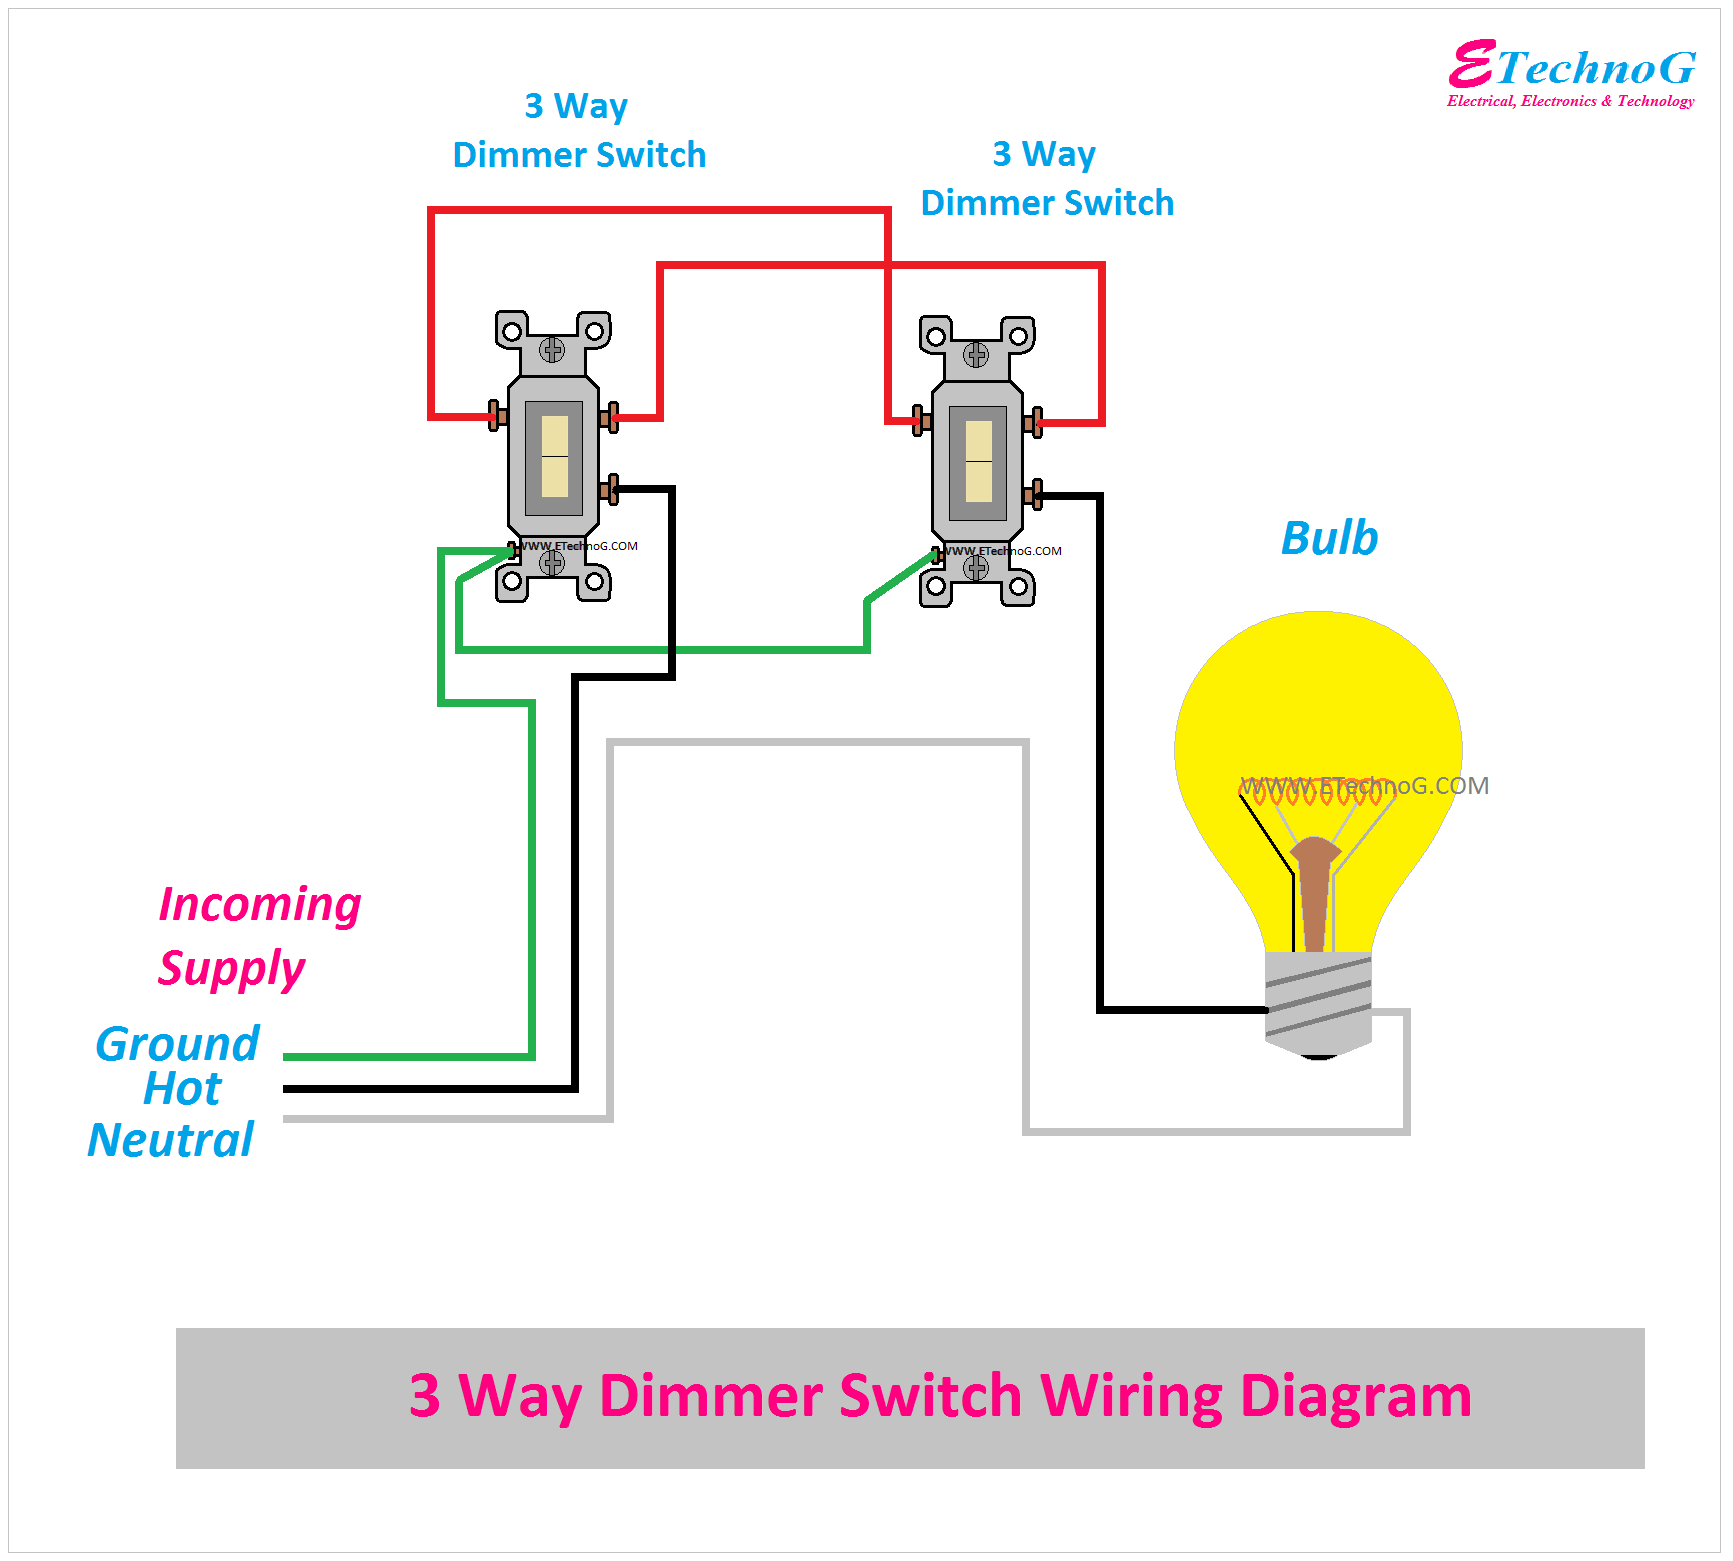 Three(3) Way Dimmer Switch Wiring Diagram